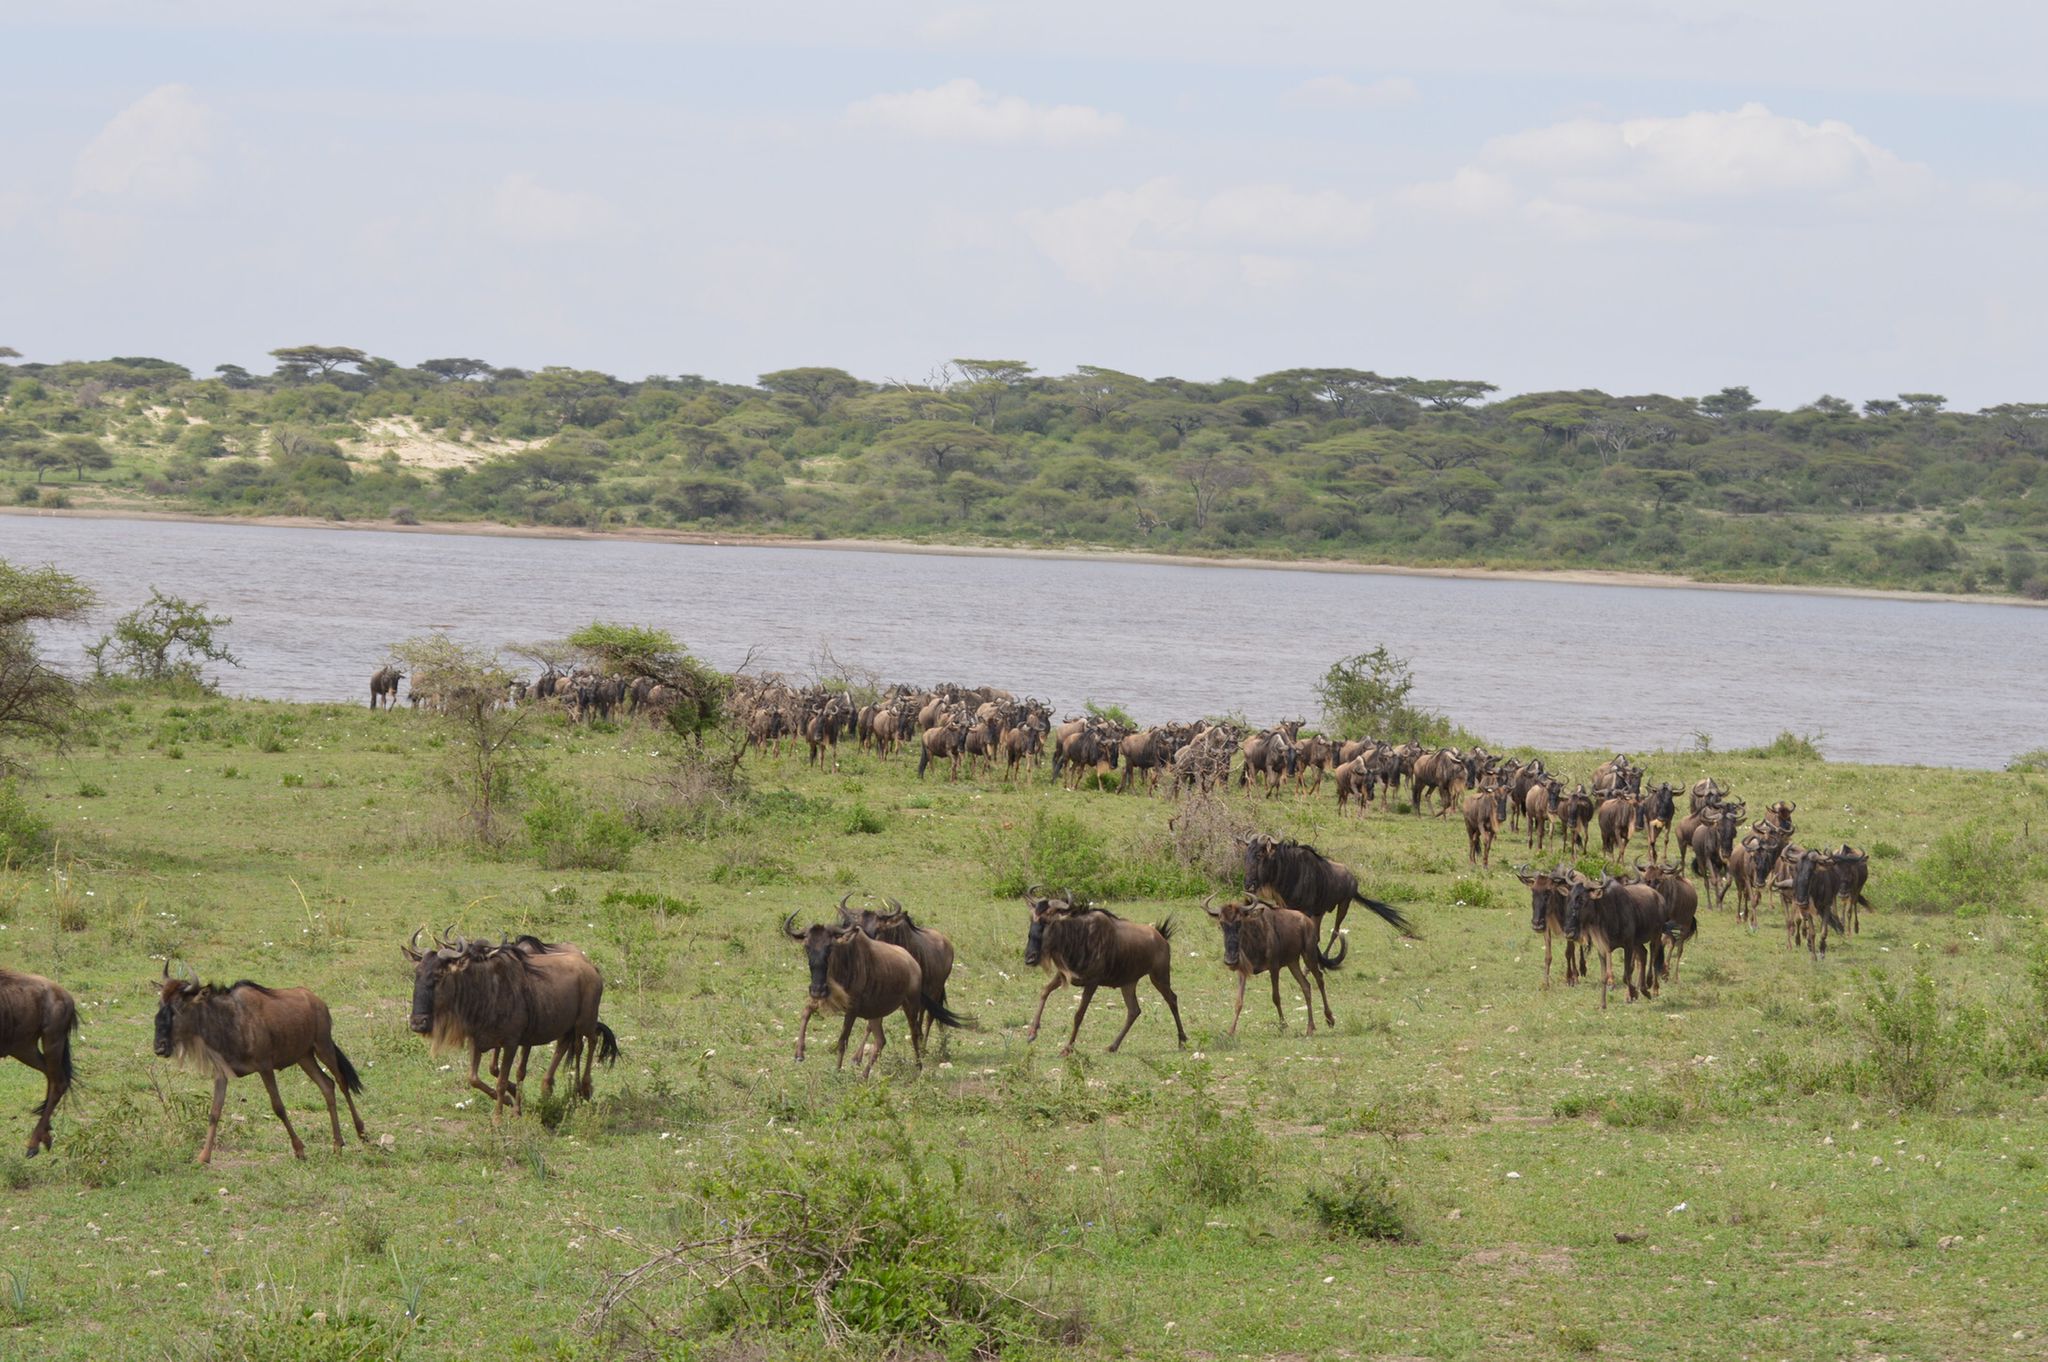 Migrating wildebeests